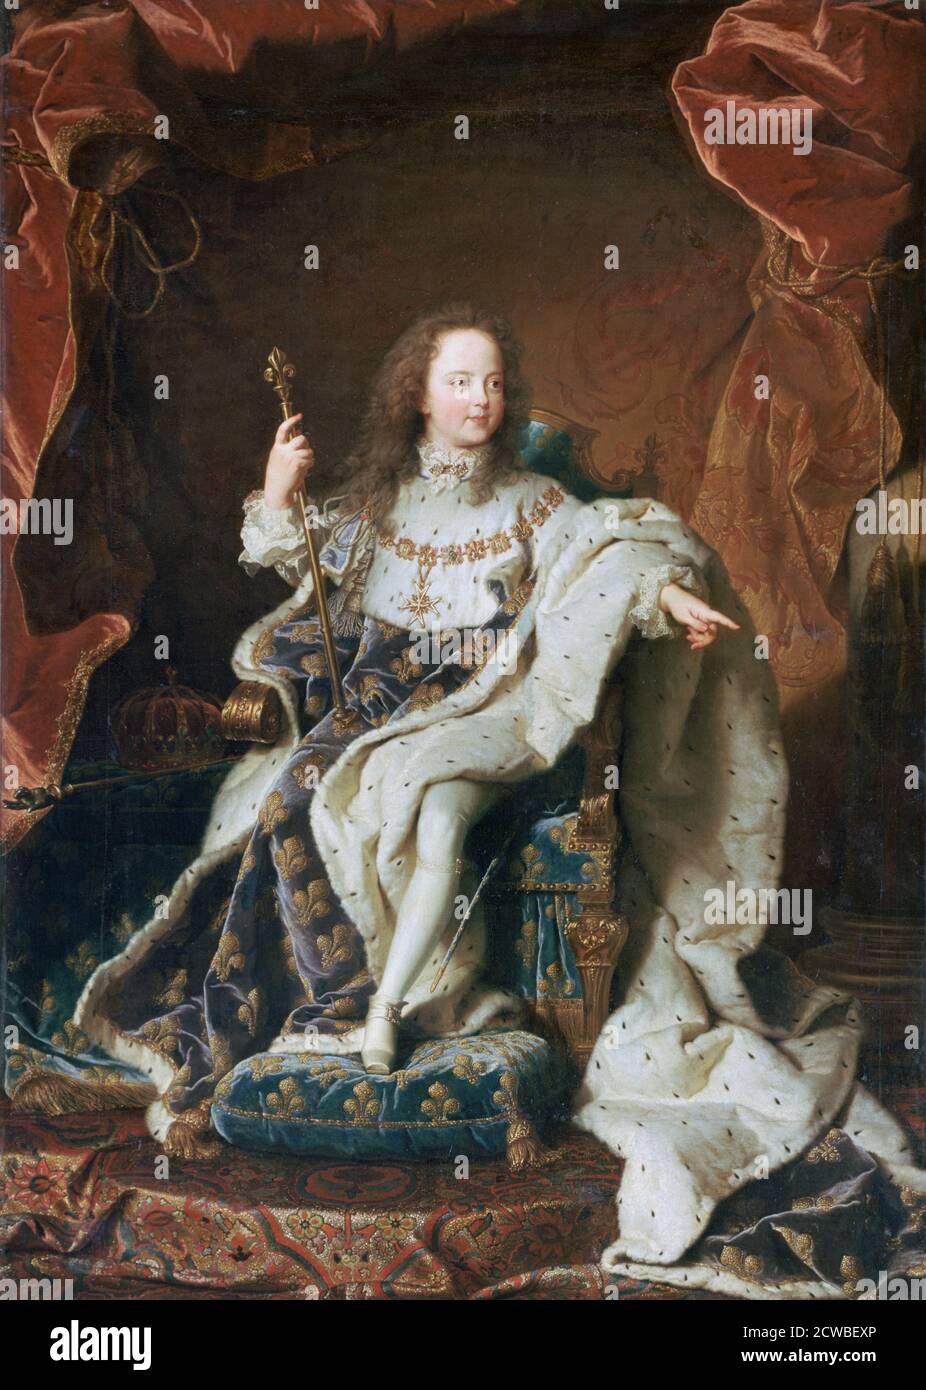 Louis XV à l'âge de cinq ans, c1715. Artiste: Hyacinthe Rigaud. Hyacinthe Rigaud (1659-1743) est un peintre baroque français plus célèbre pour ses portraits de Louis XIV et d'autres membres de la noblesse française. Banque D'Images